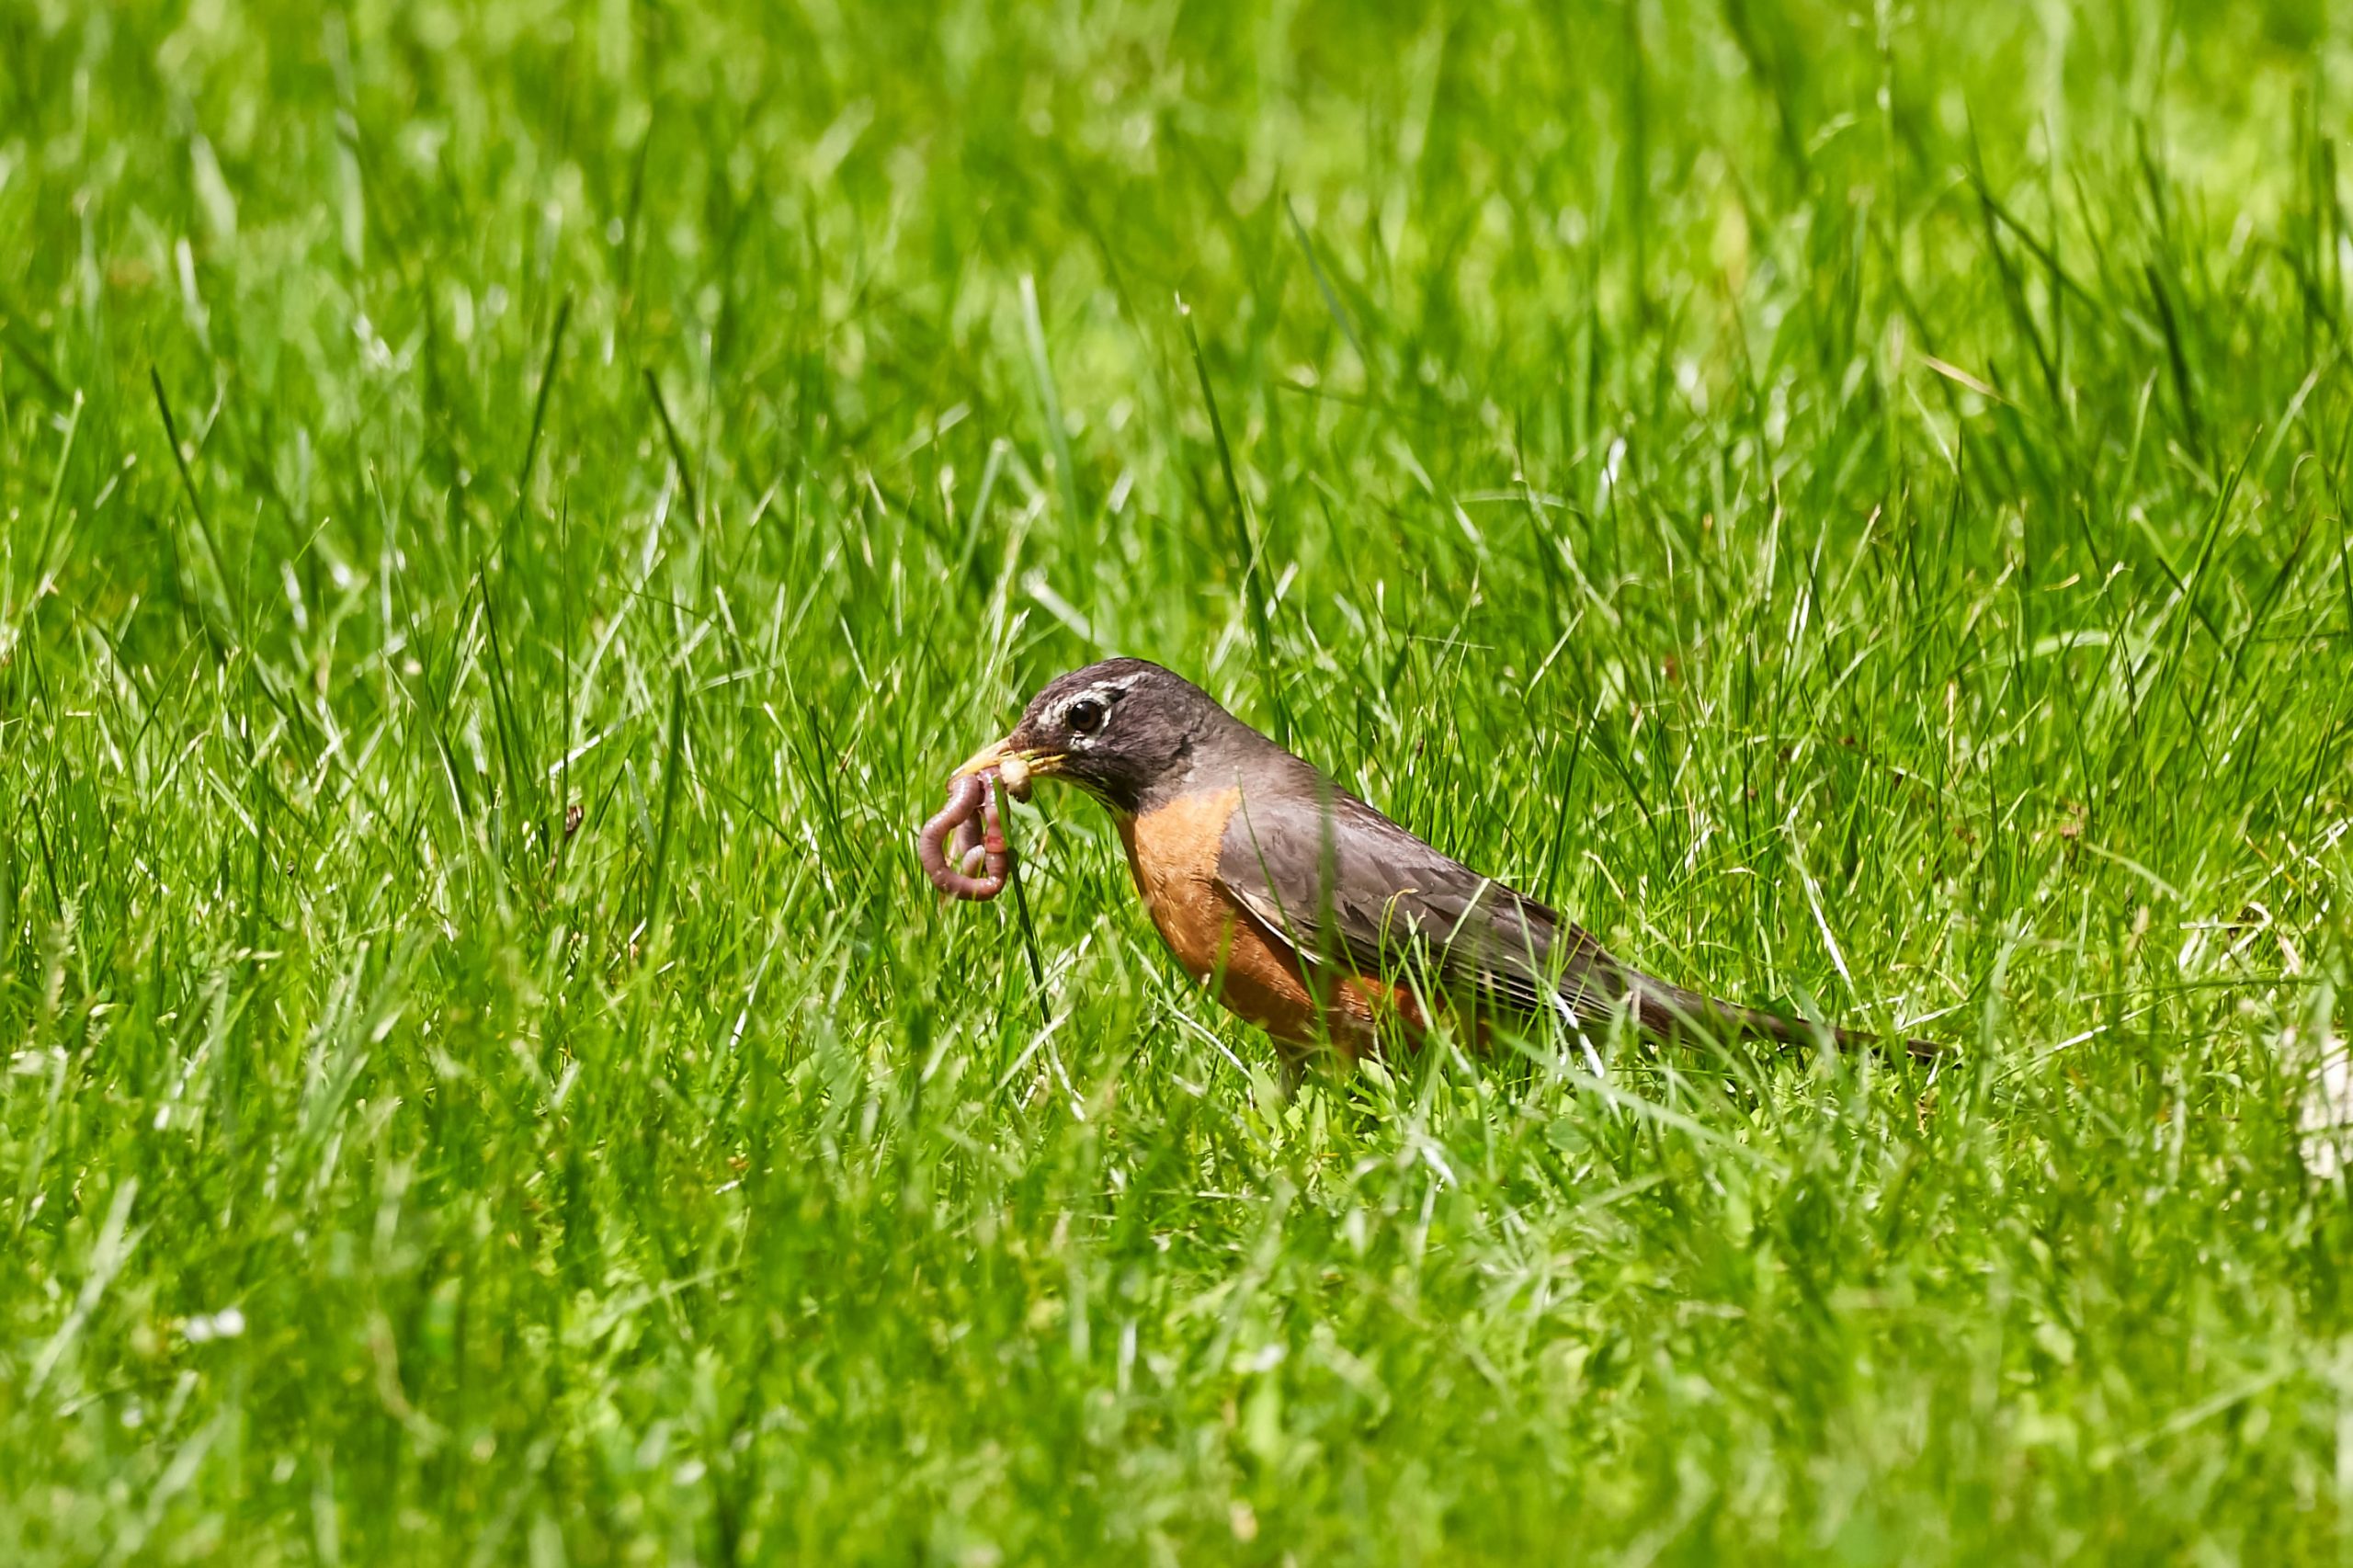 Bird with worm in grass by Mathew Schwartz on Unsplash